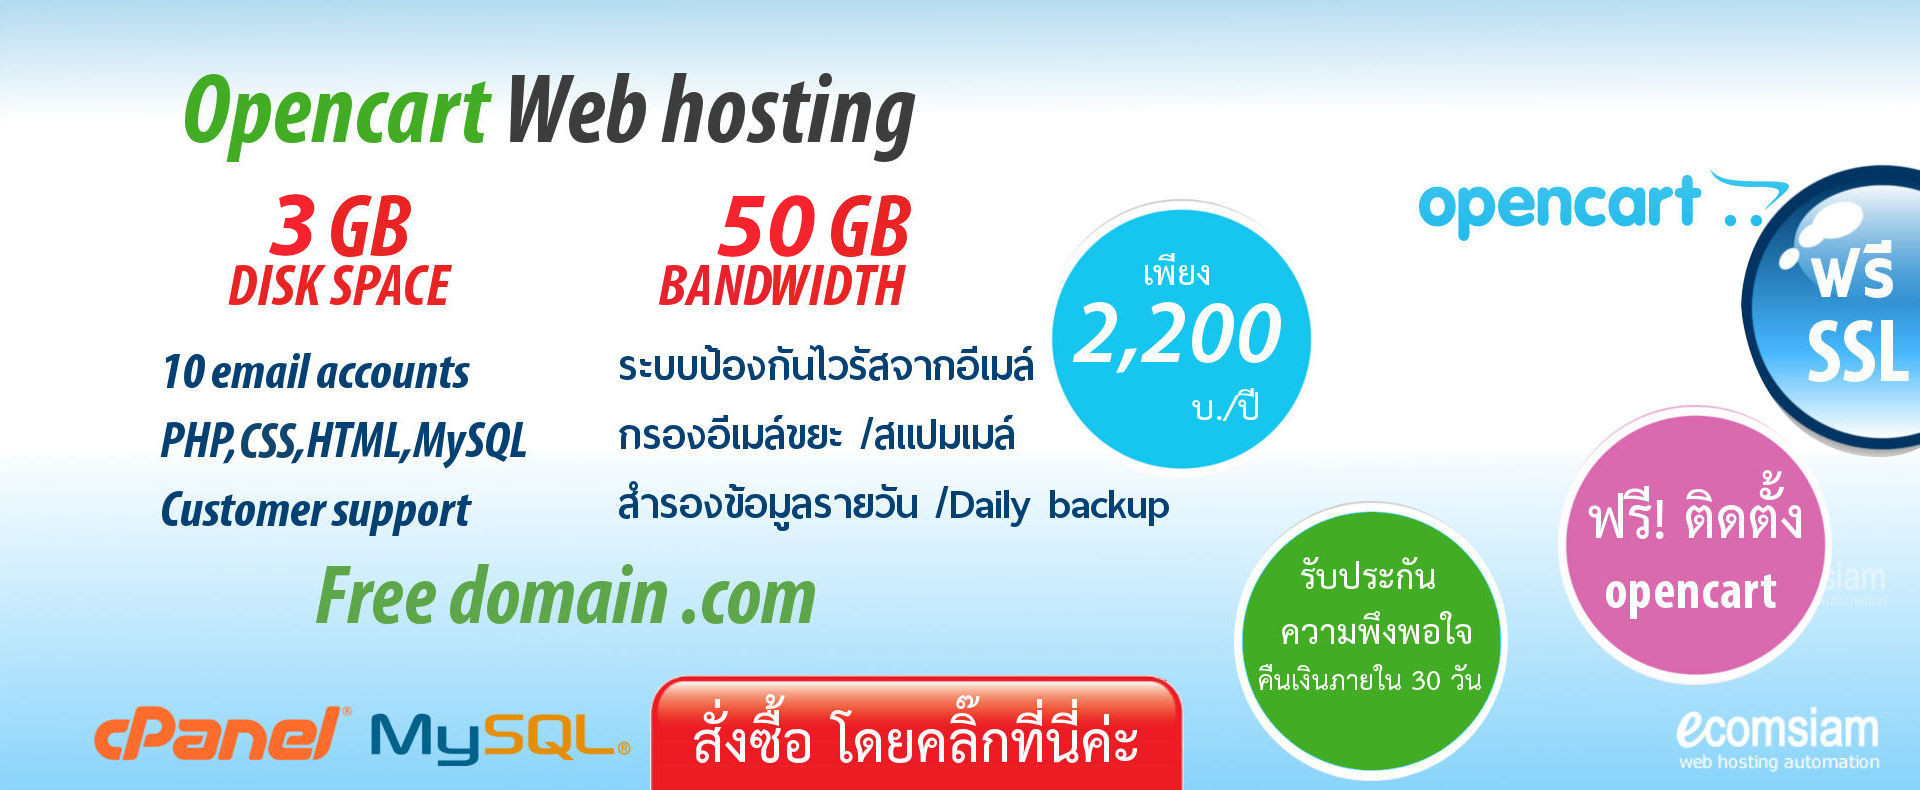 Opencart web hosting thailand เว็บโฮสติ้งไทย ฟรีโดเมน ฟรี SSL คุณภาพสูง สำหรับองค์กร คุ้มค่าสุดๆ